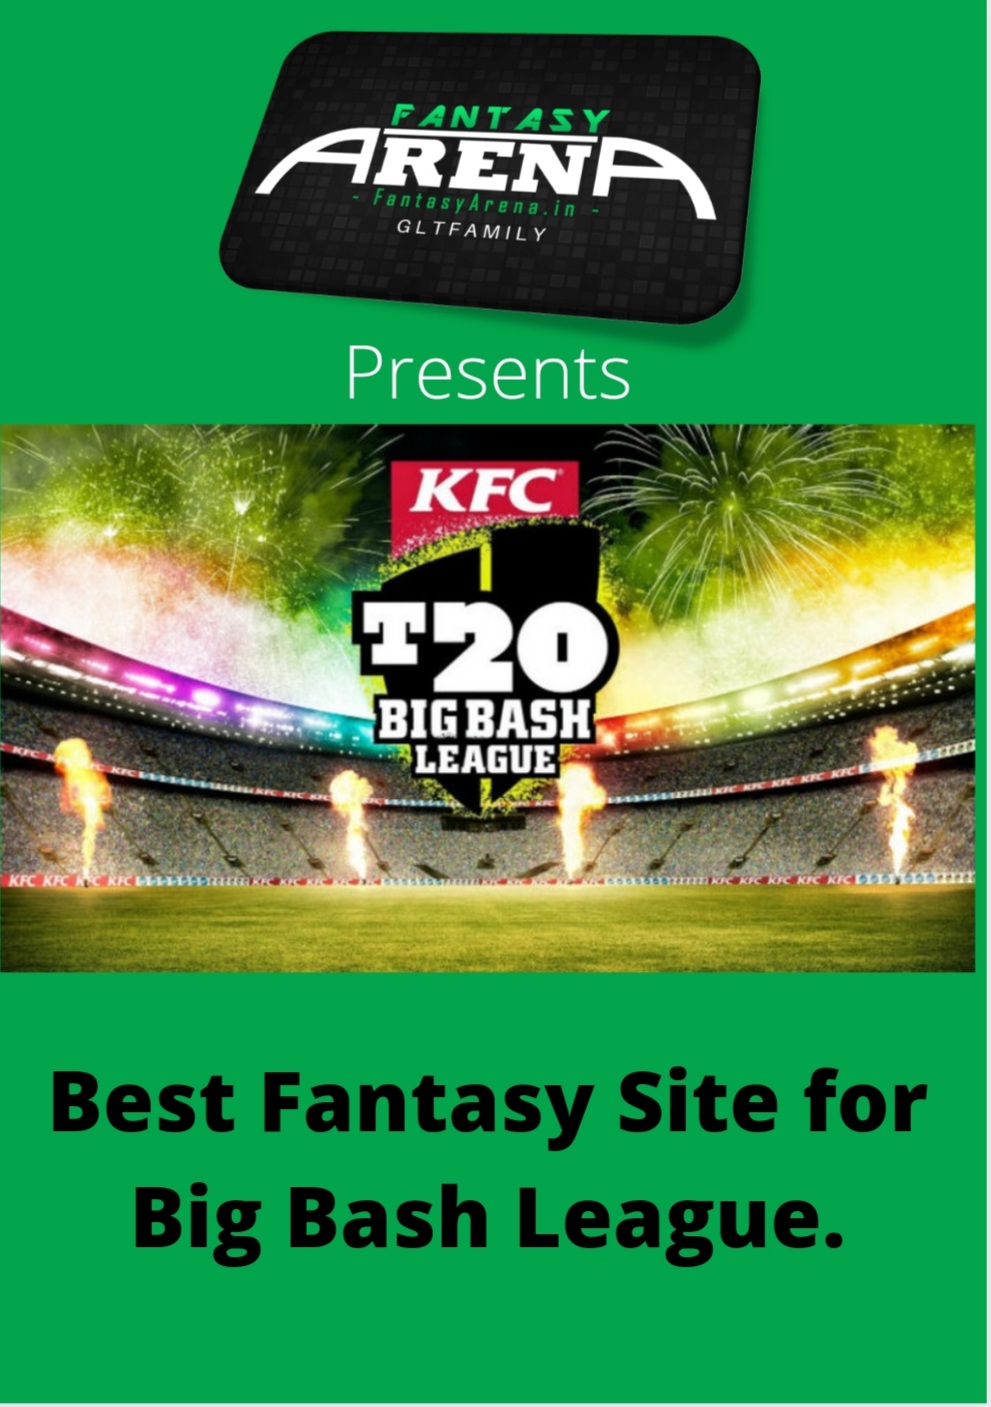 Best Fantasy Site for Big Bash League.